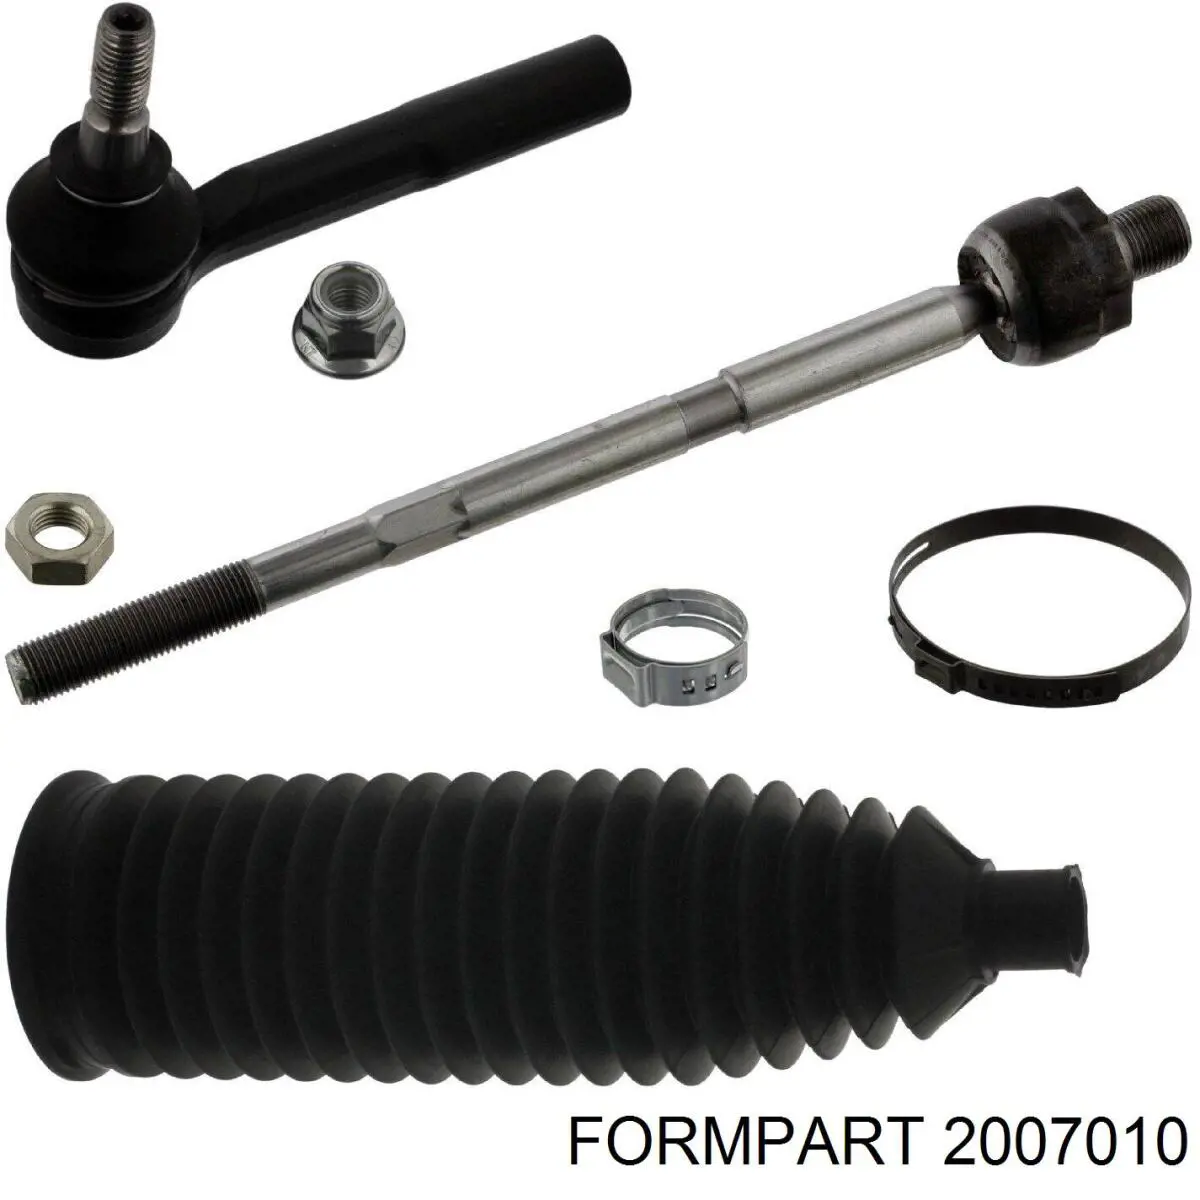 2007010 Formpart/Otoform barra de acoplamiento